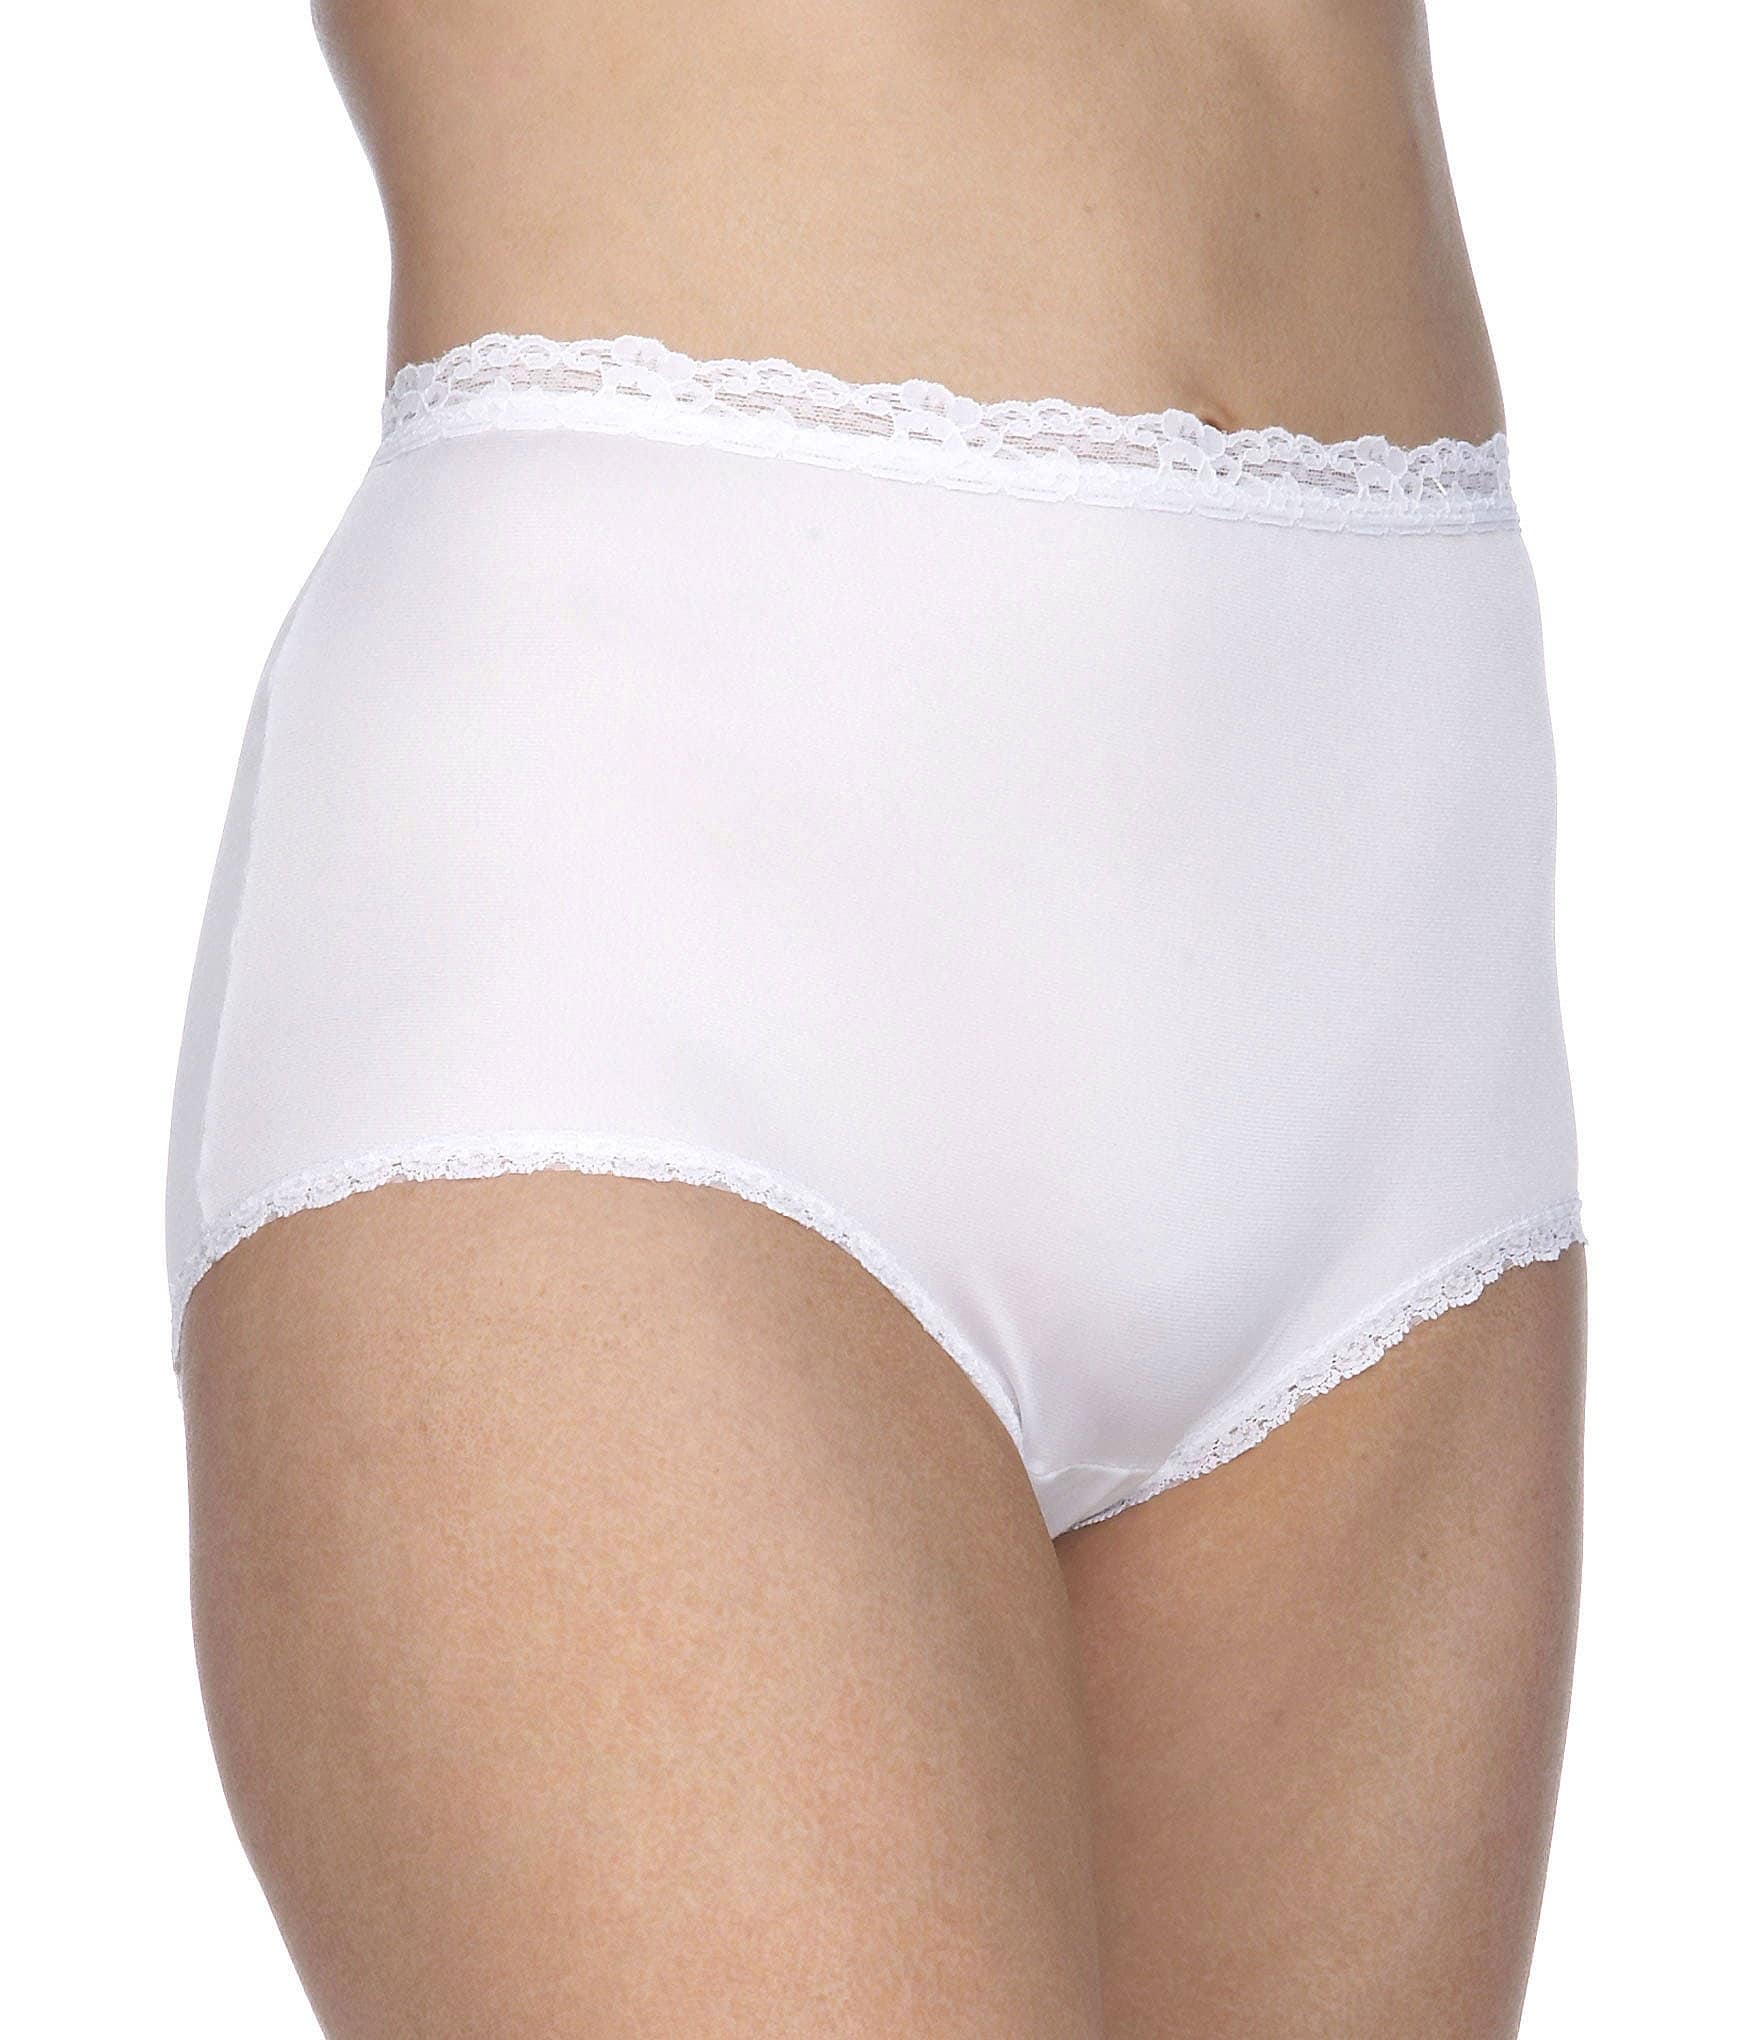 white: Women's Panties